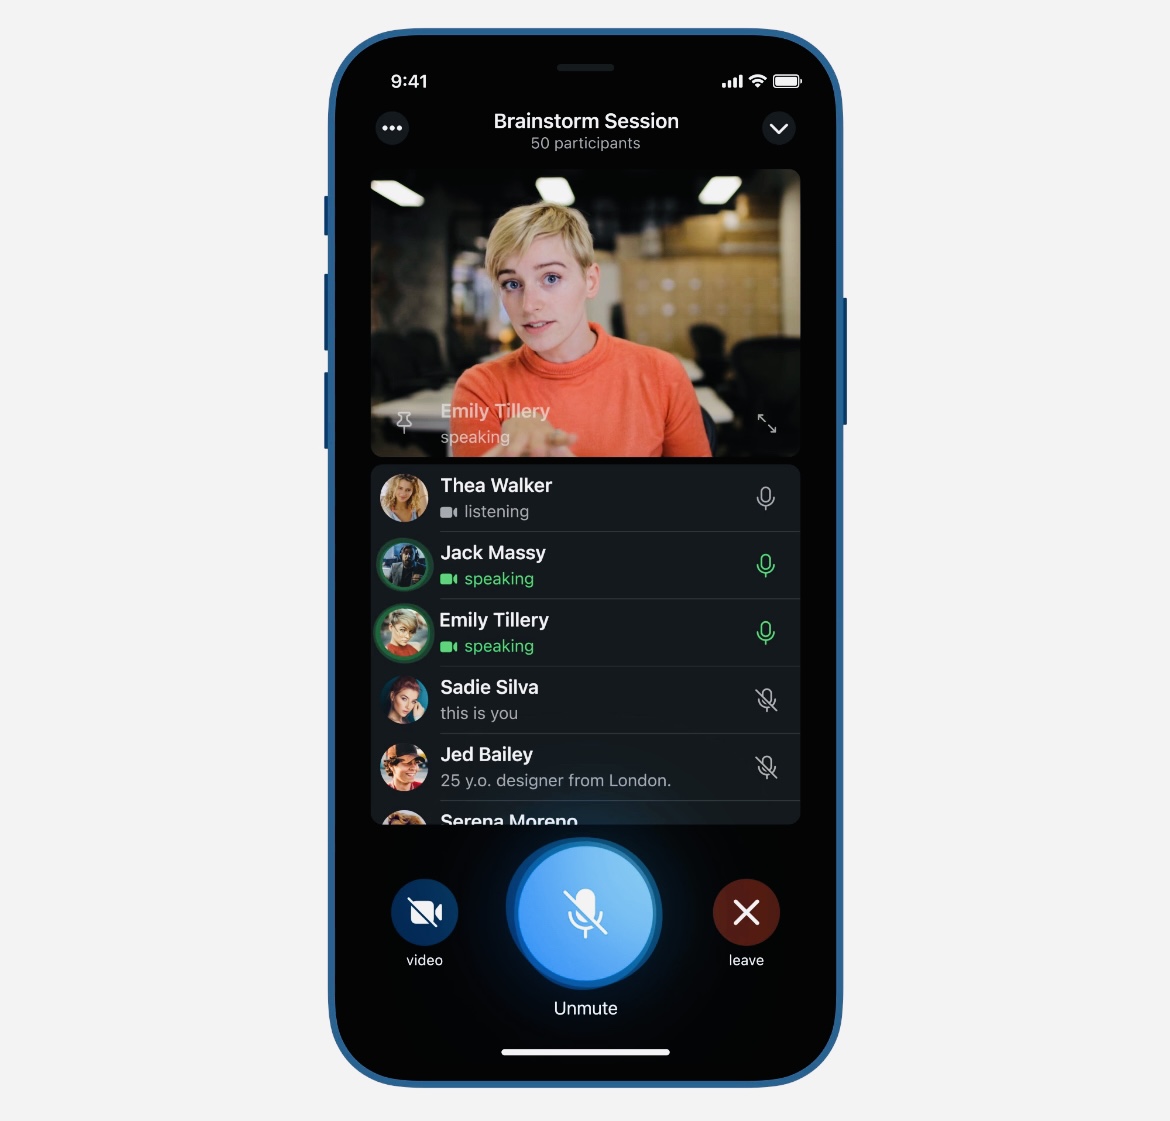 Павел Дуров анонсировал групповые видеозвонки в Telegram. Появятся в мае